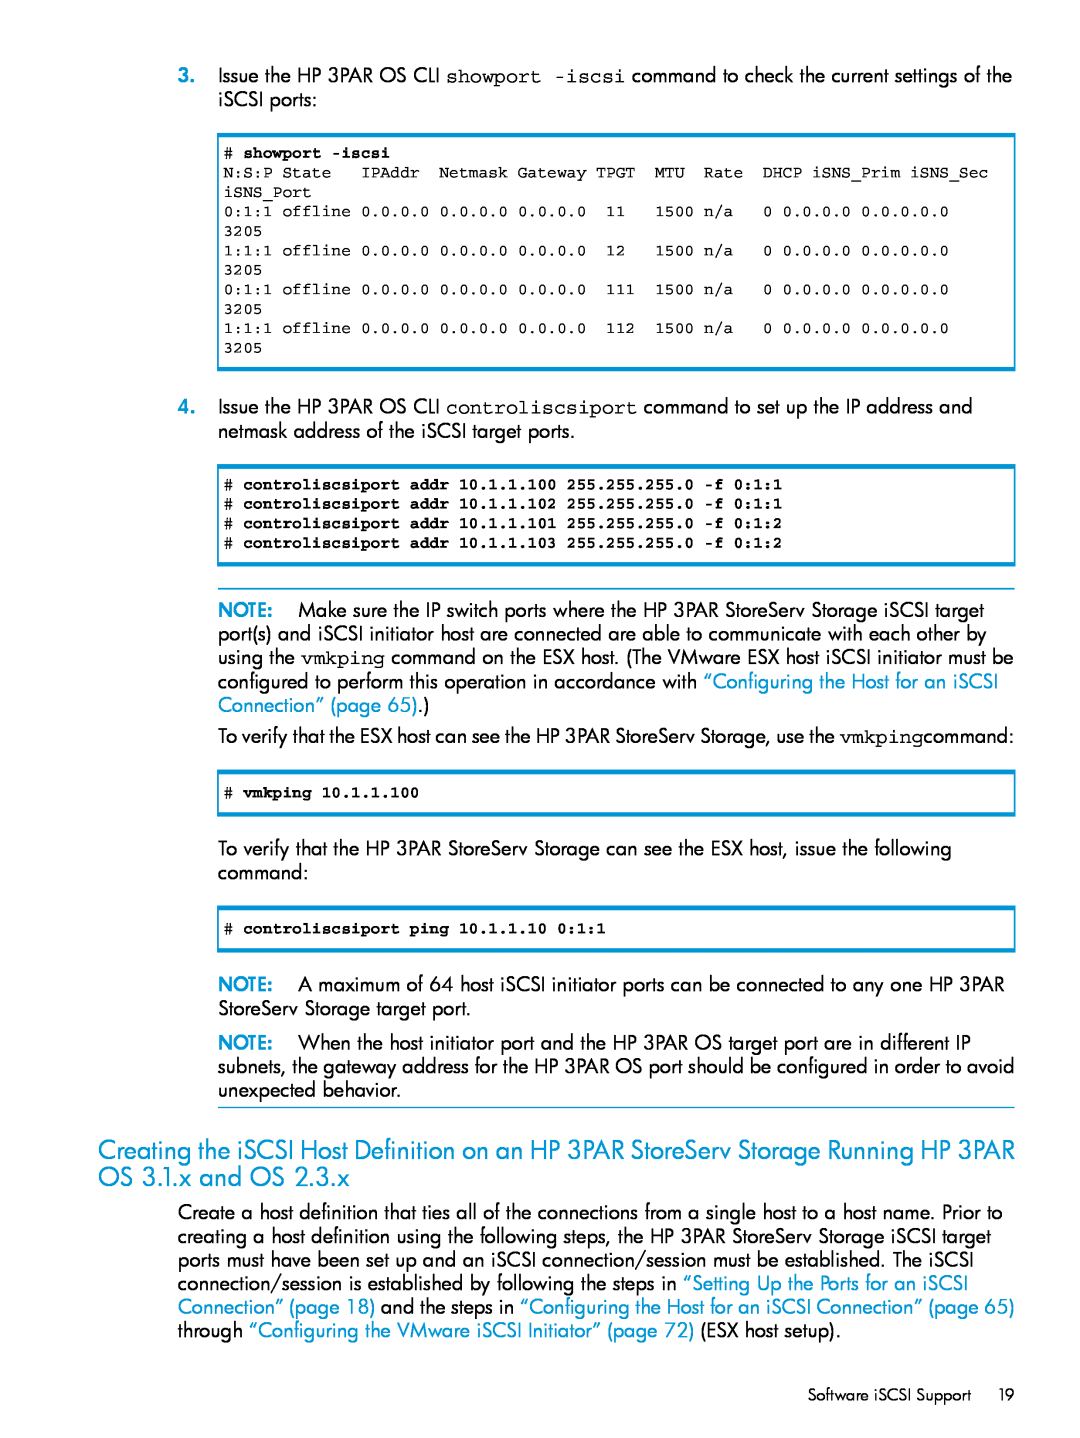 HP QR516B manual # showport -iscsi, # controliscsiport addr 10.1.1.100 255.255.255.0 -f, # vmkping, Software iSCSI Support 